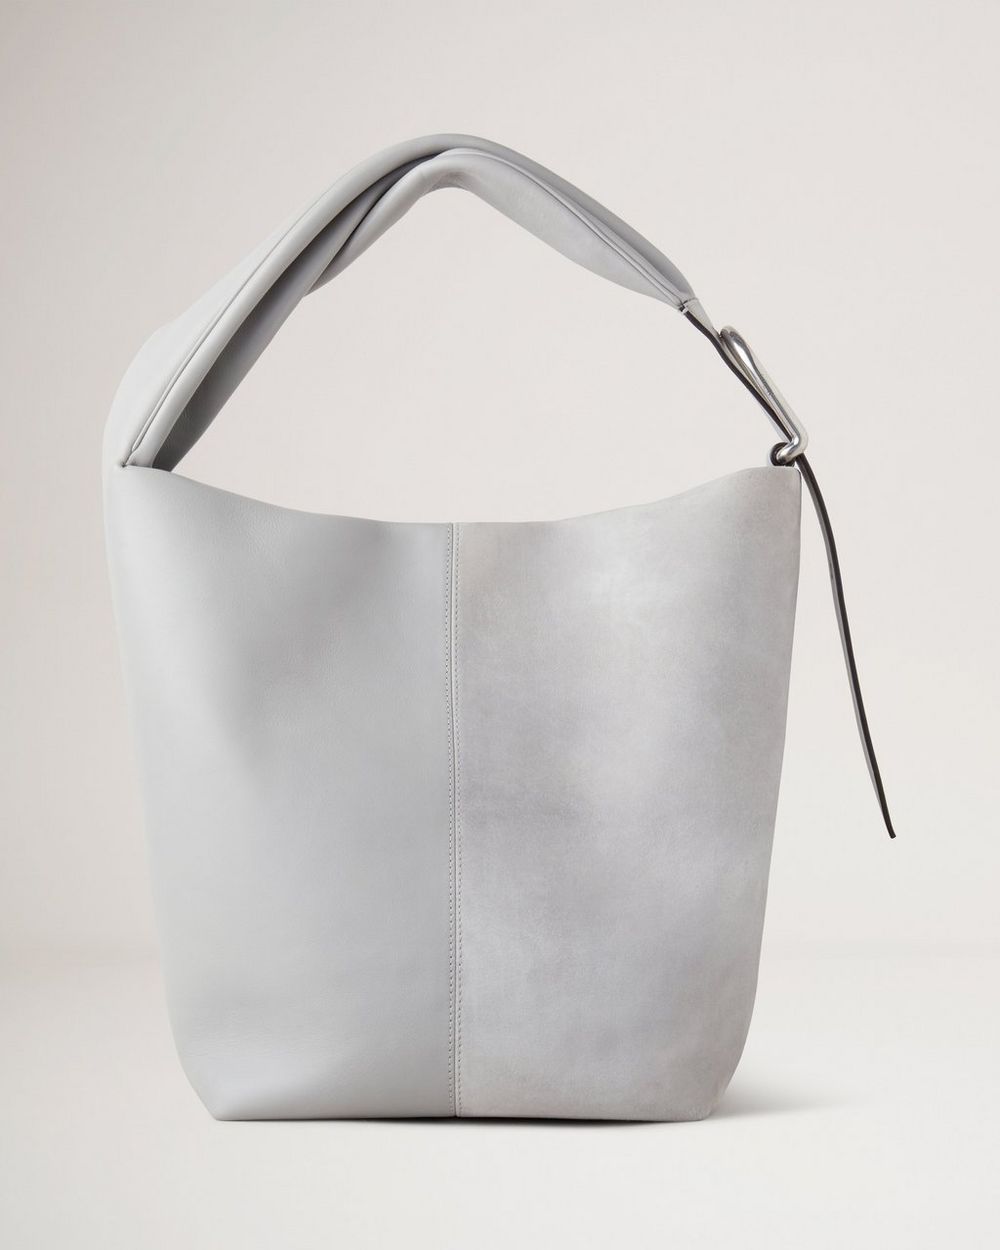 Longchamp Hobo Bag Gold Patent Leather Handbag Women's -  Sweden